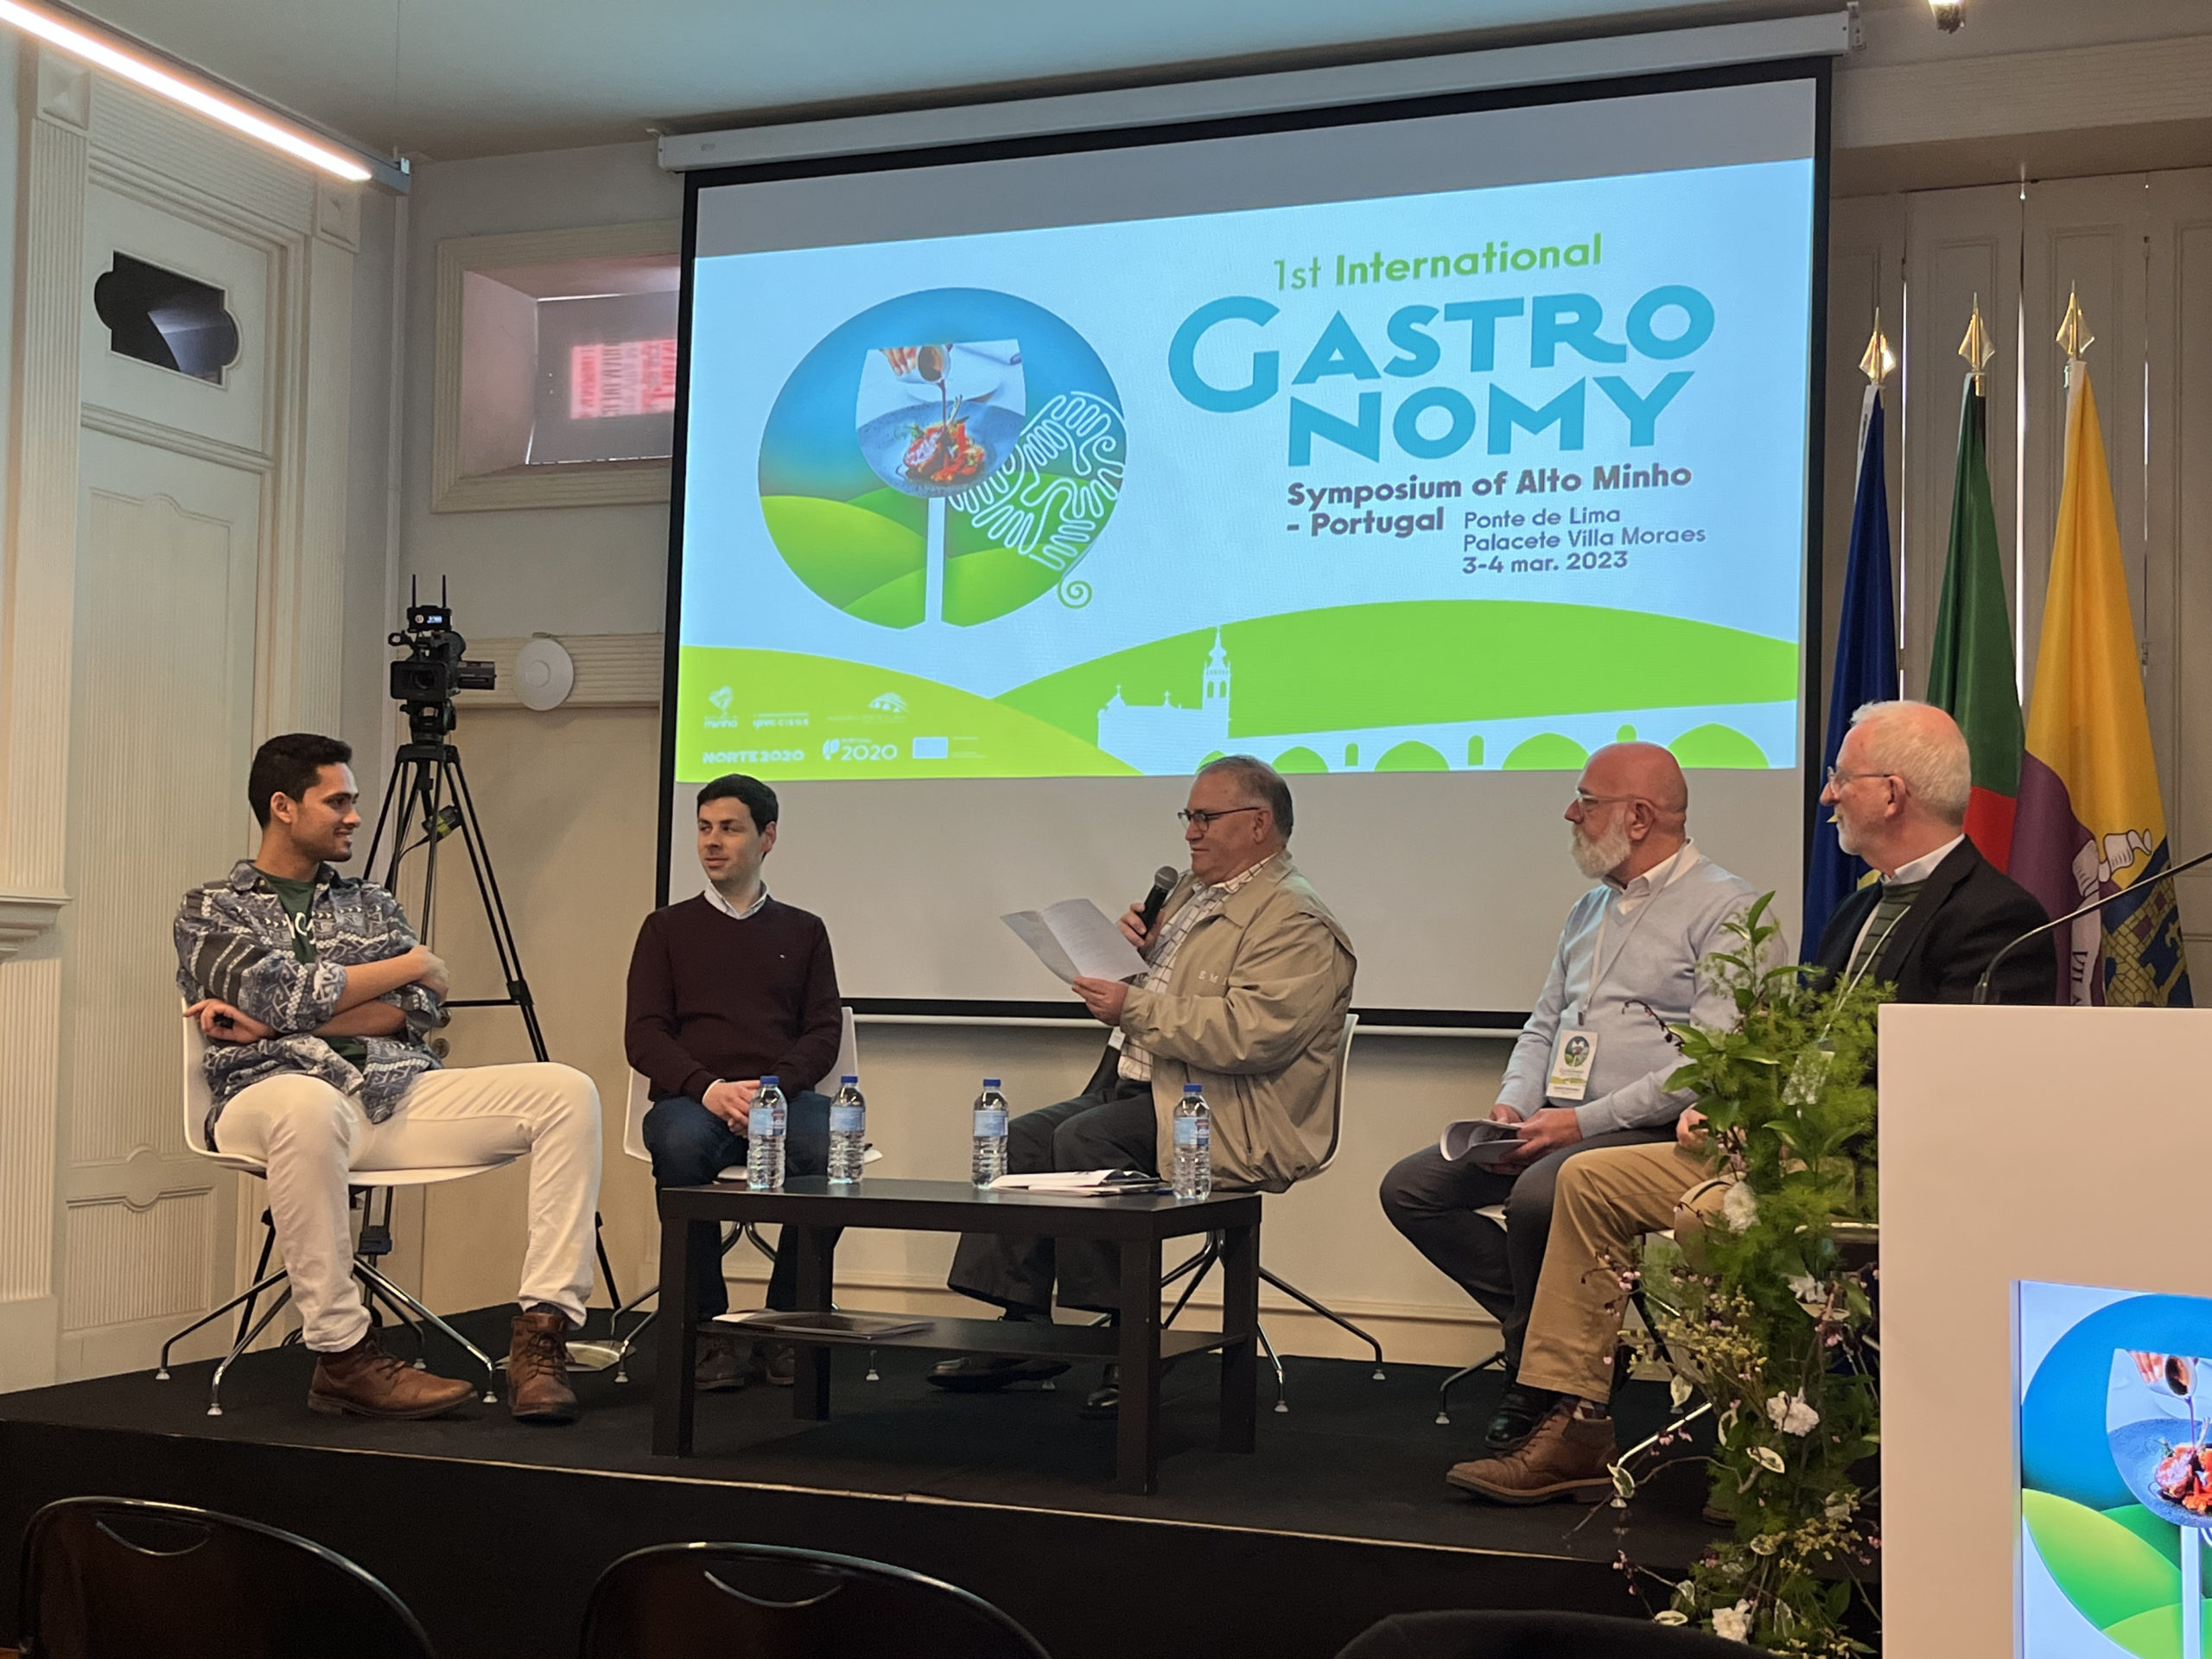 BCC Innovation participa en el I Simposio Internacional de Gastronomía del Alto Miño en Portugal